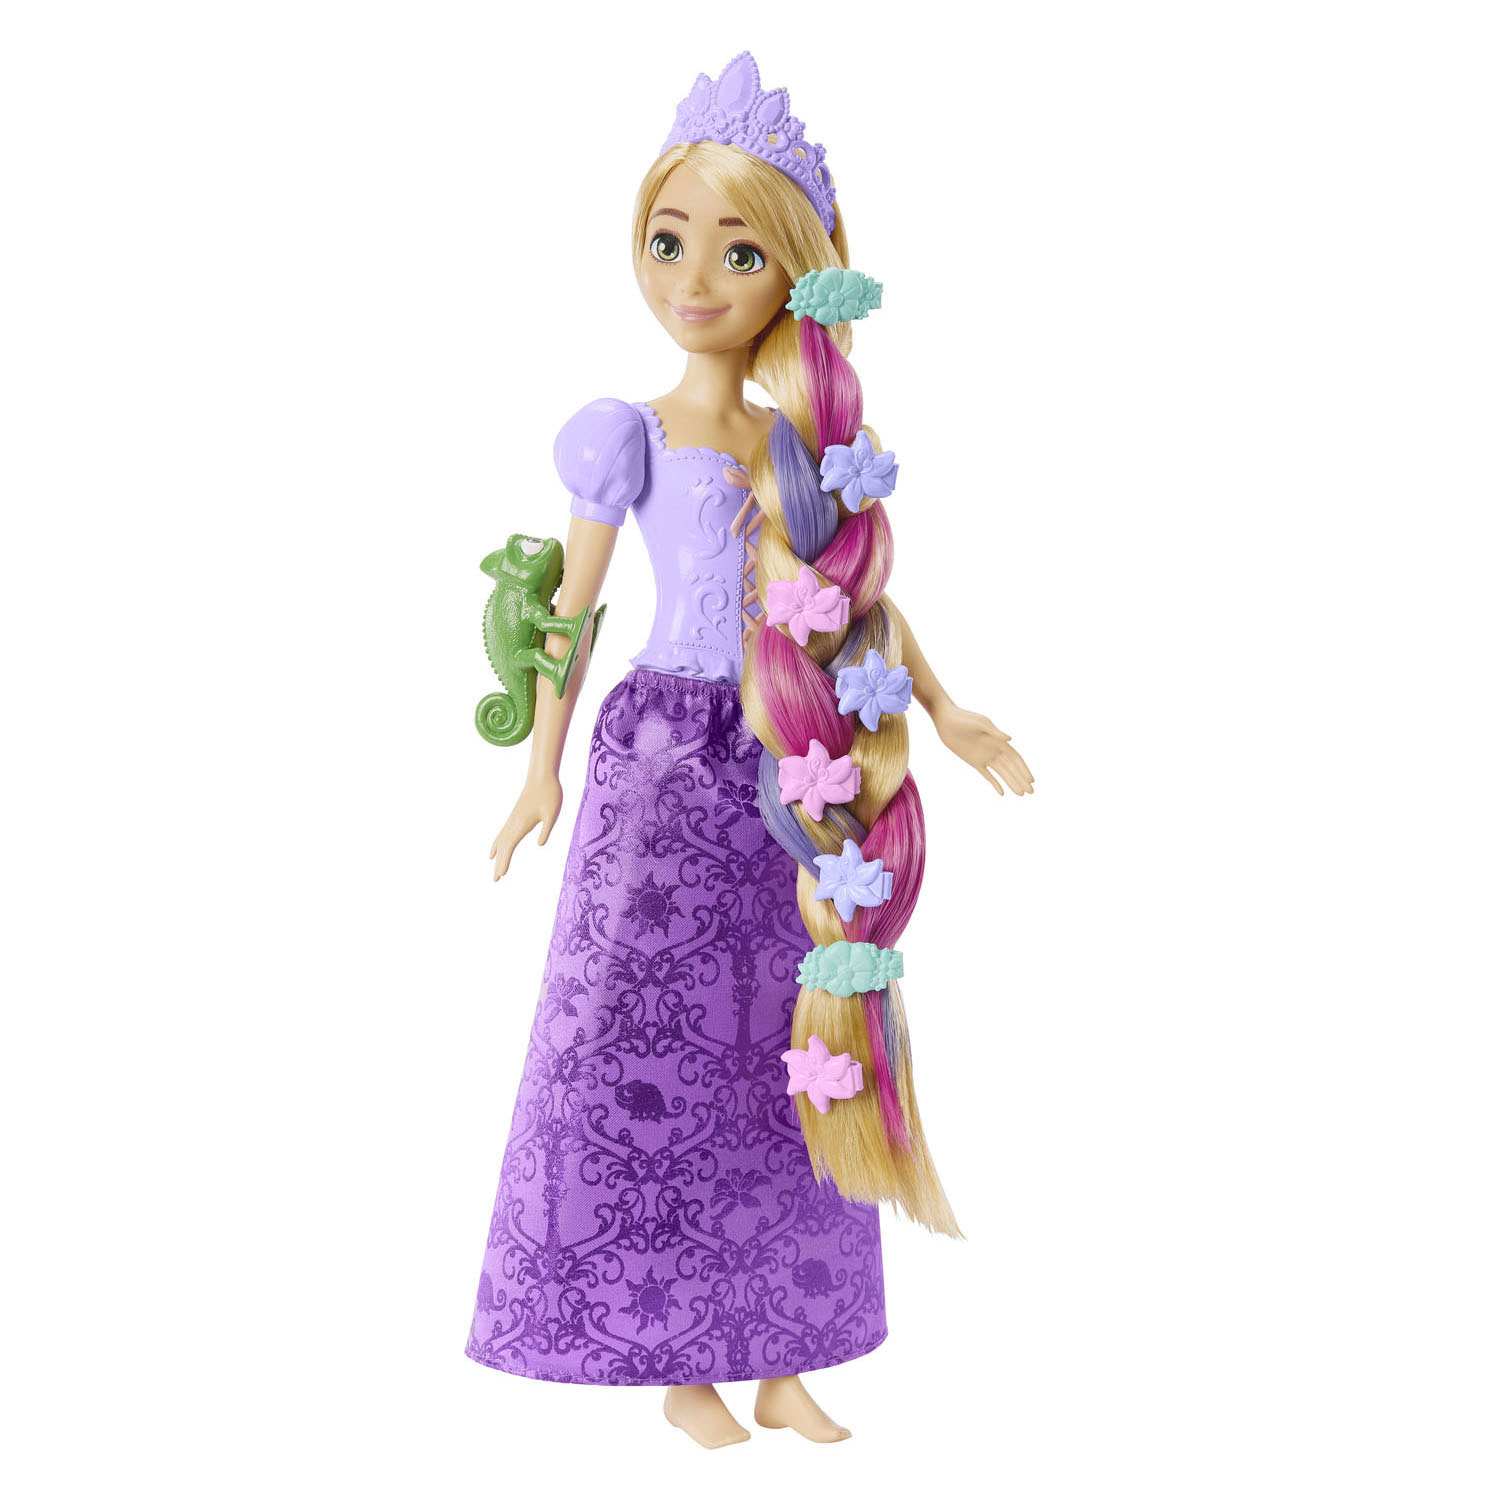 Princesse Disney Fairy-Tail Cheveux Raiponce Poupée